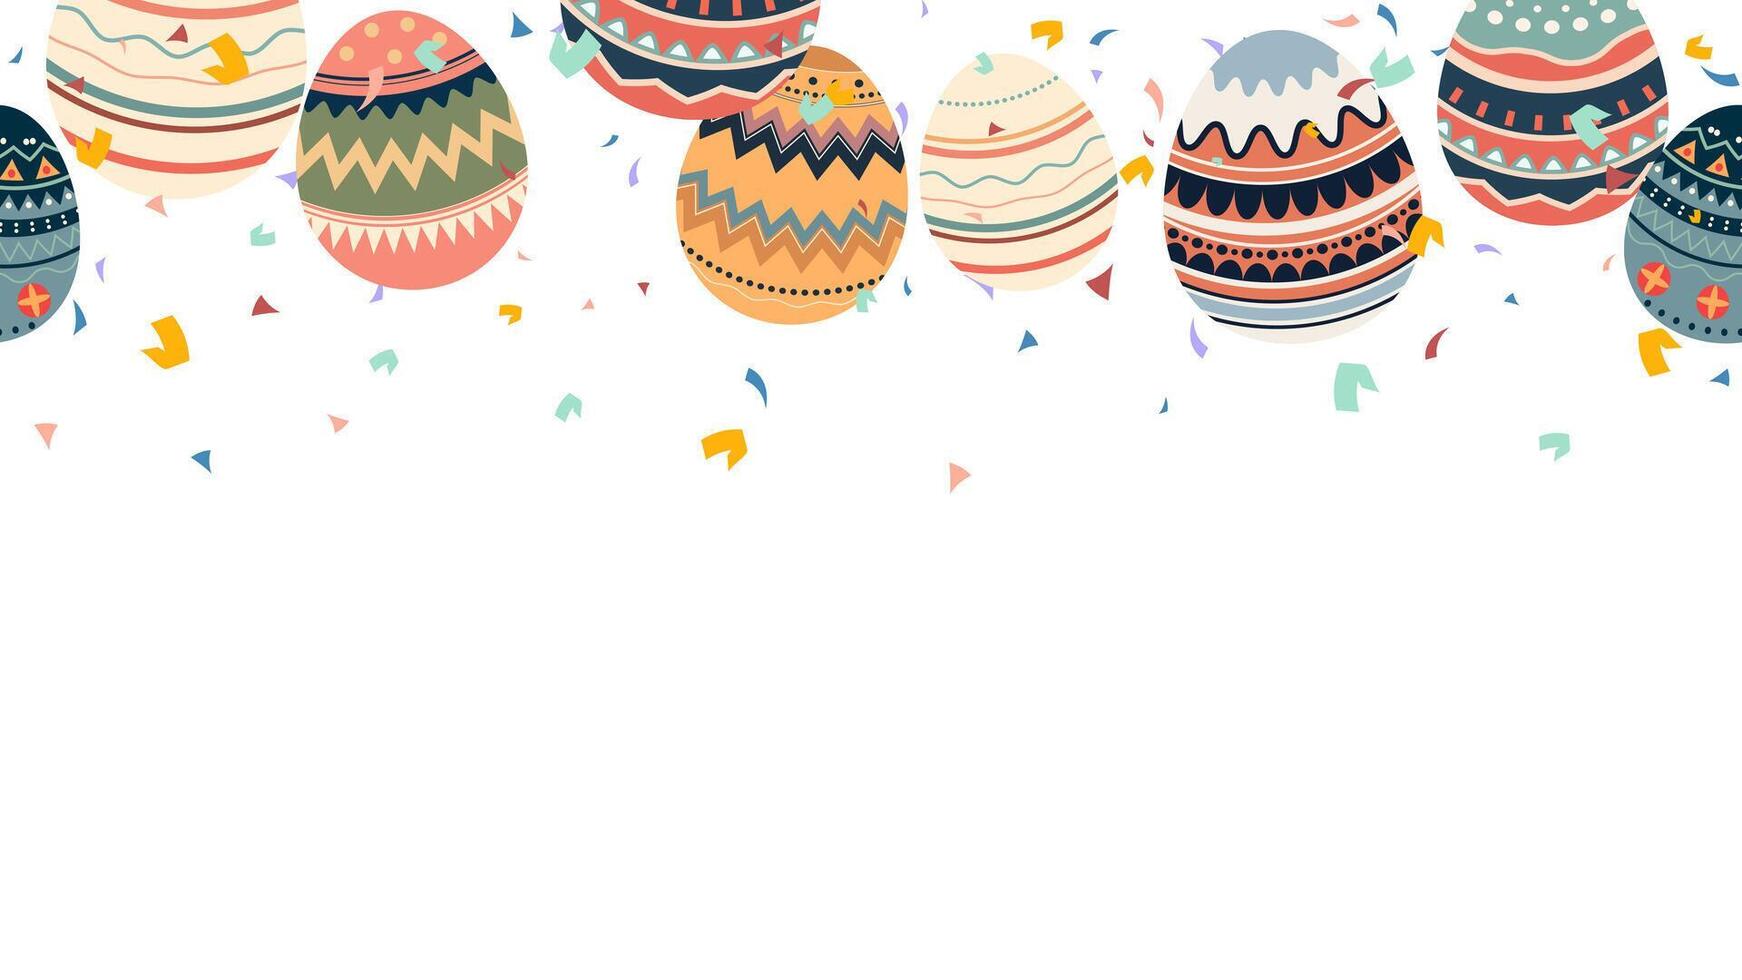 vistoso retro pintado huevos y papel picado sin costura bandera horizontal con contento Pascua de Resurrección vector